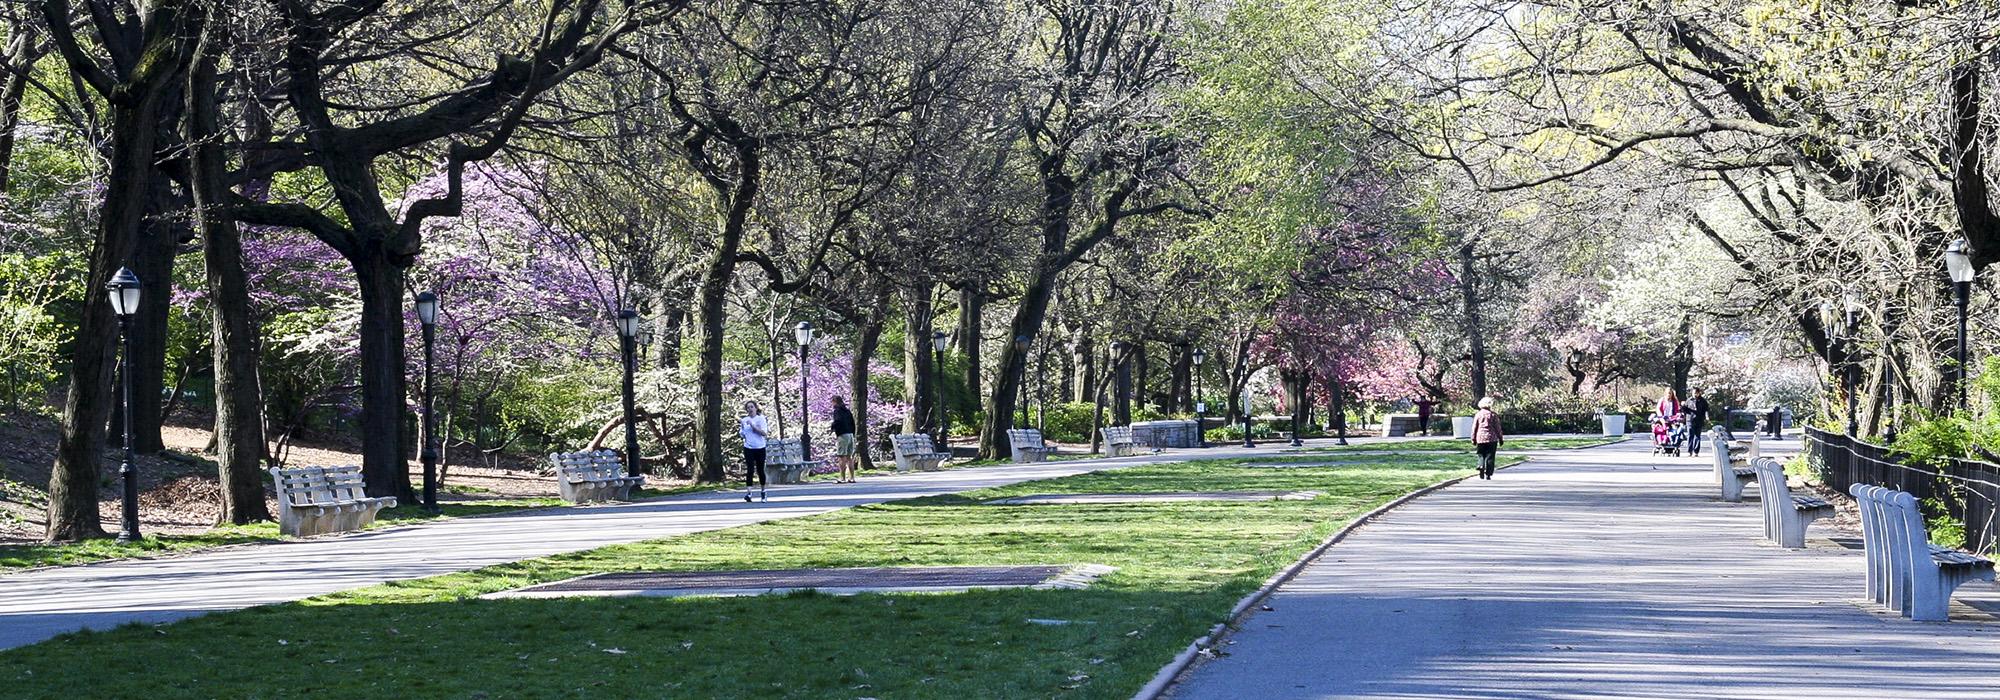 Riverside Park, New York, NY